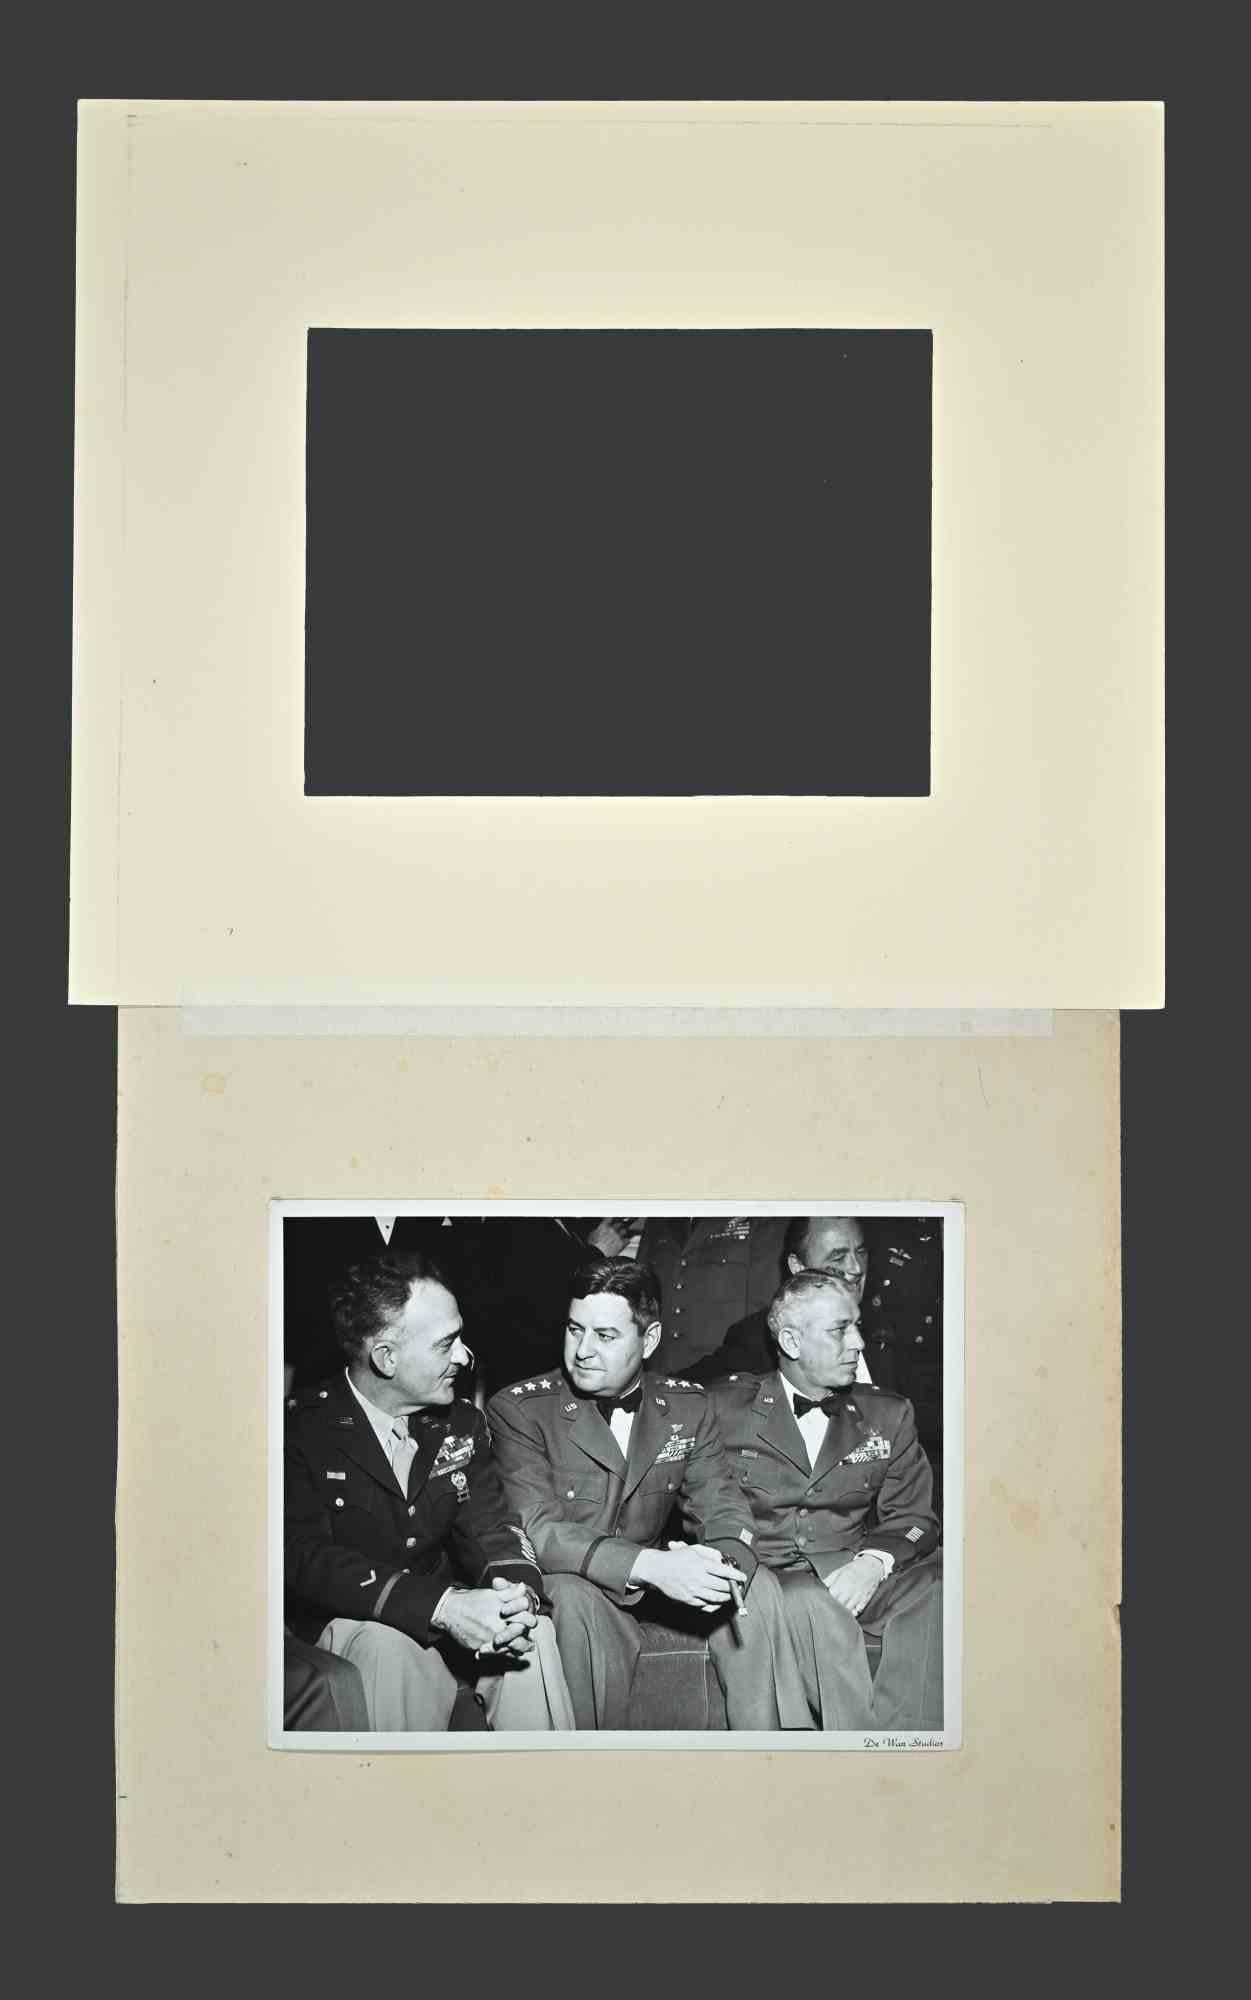 Porträt der amerikanischen Generals des Zweiten Weltkriegs - Vintage-B/W-Fotografie - 1940er Jahre – Photograph von De Wan Studios